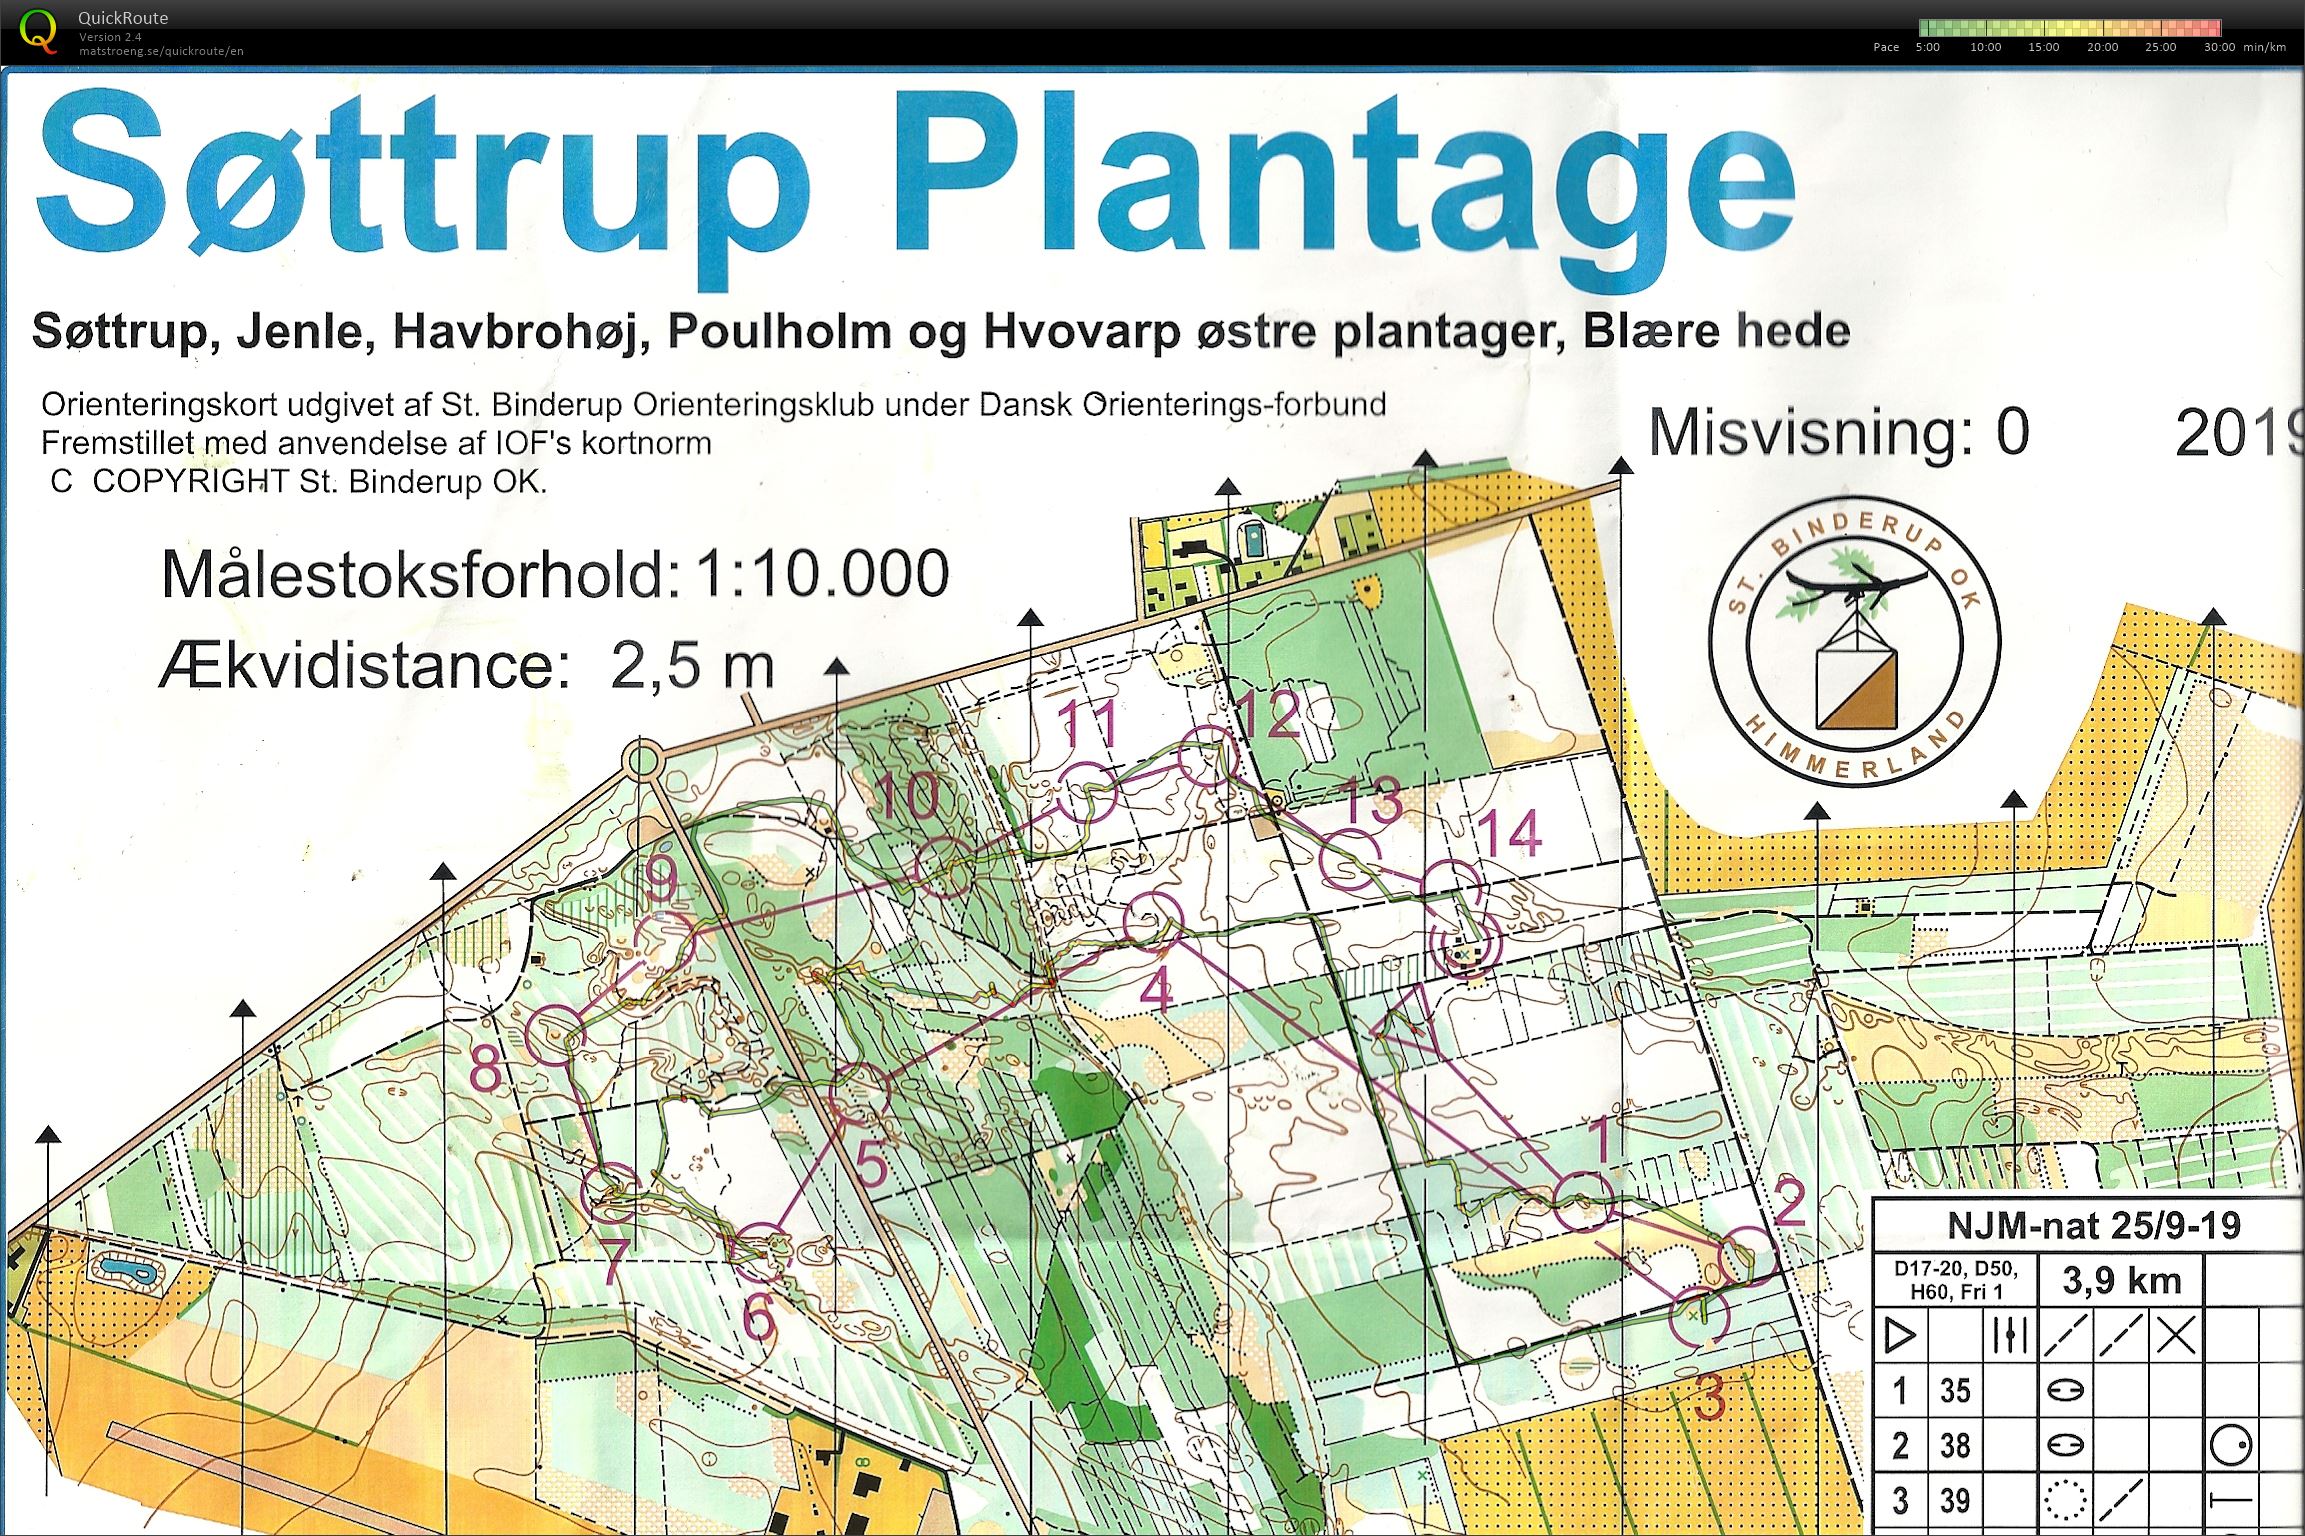 Søttrup Plantage, NJM Nat. Bane D50. (2019-09-25)